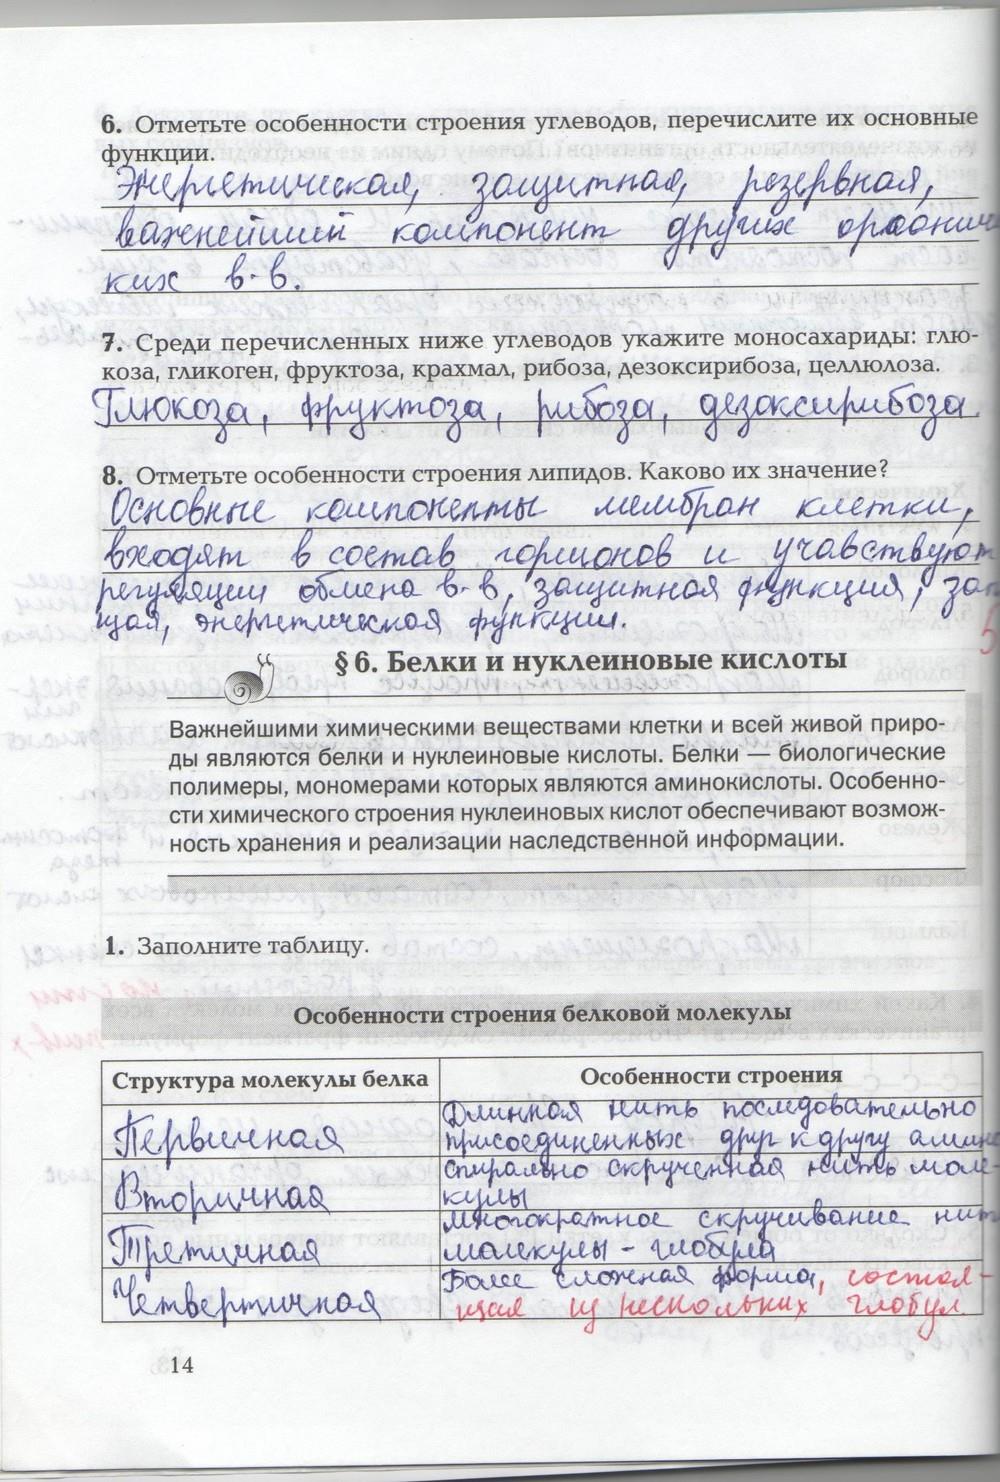 гдз 9 класс рабочая тетрадь страница 14 биология Козлова, Кучменко